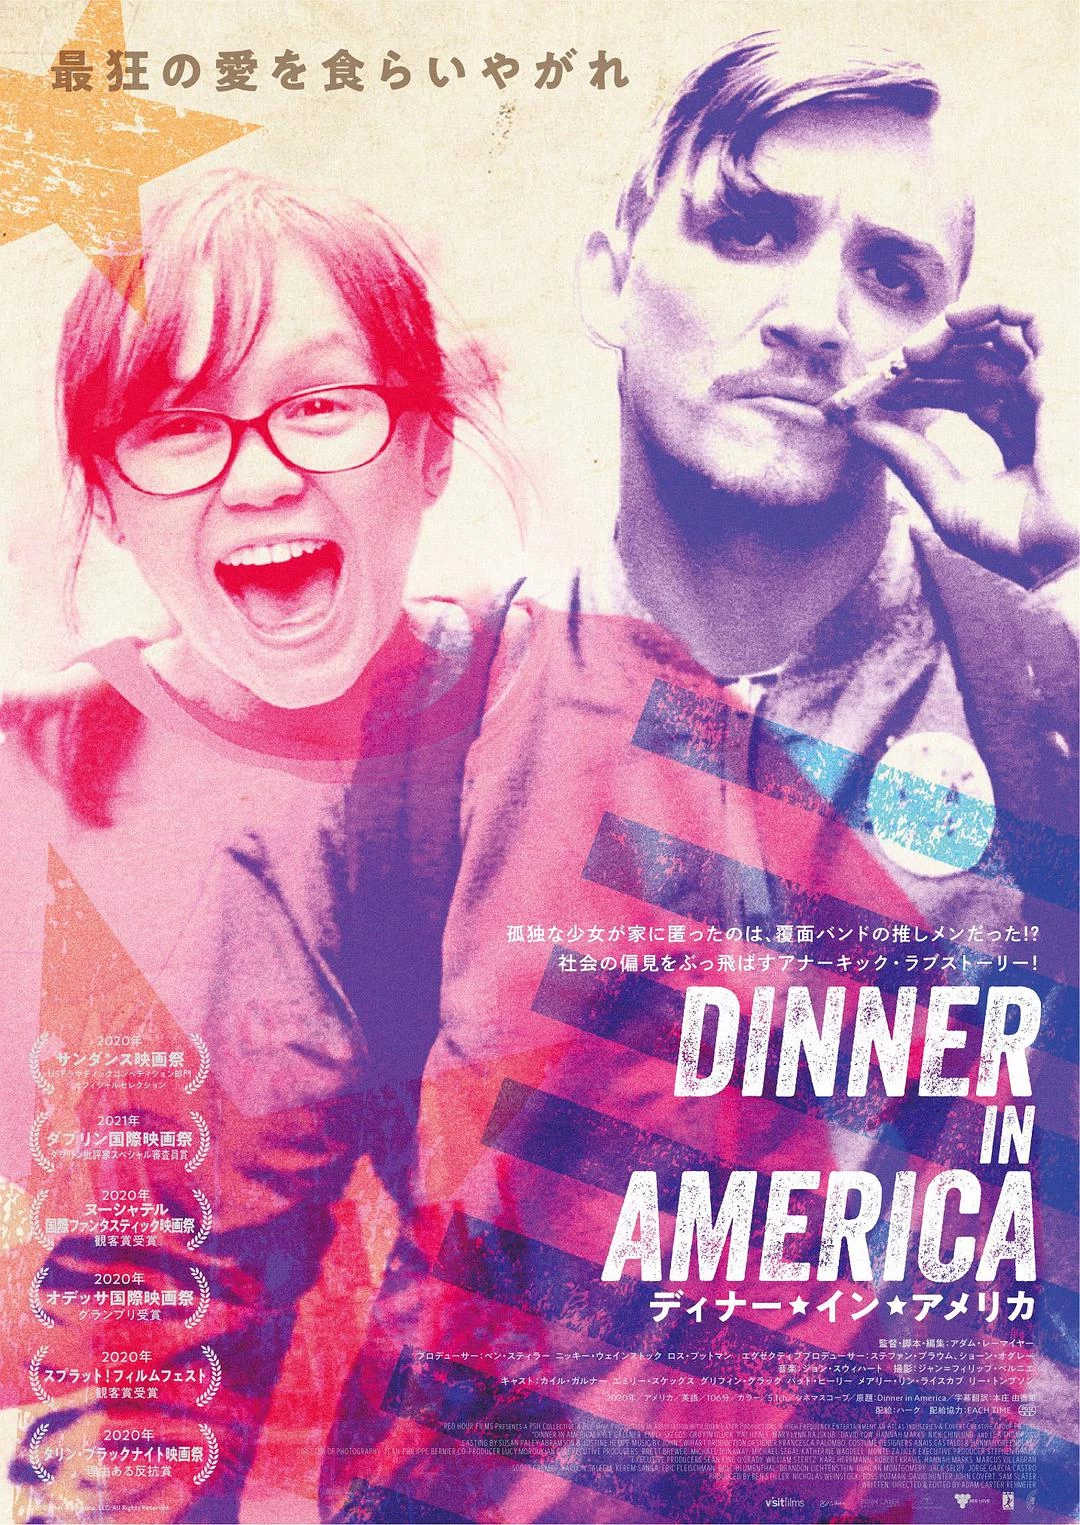 美式晚宴 蓝光原盘下载+高清MKV版/美国心庞克情(台) 2020 Dinner in America 44.7G